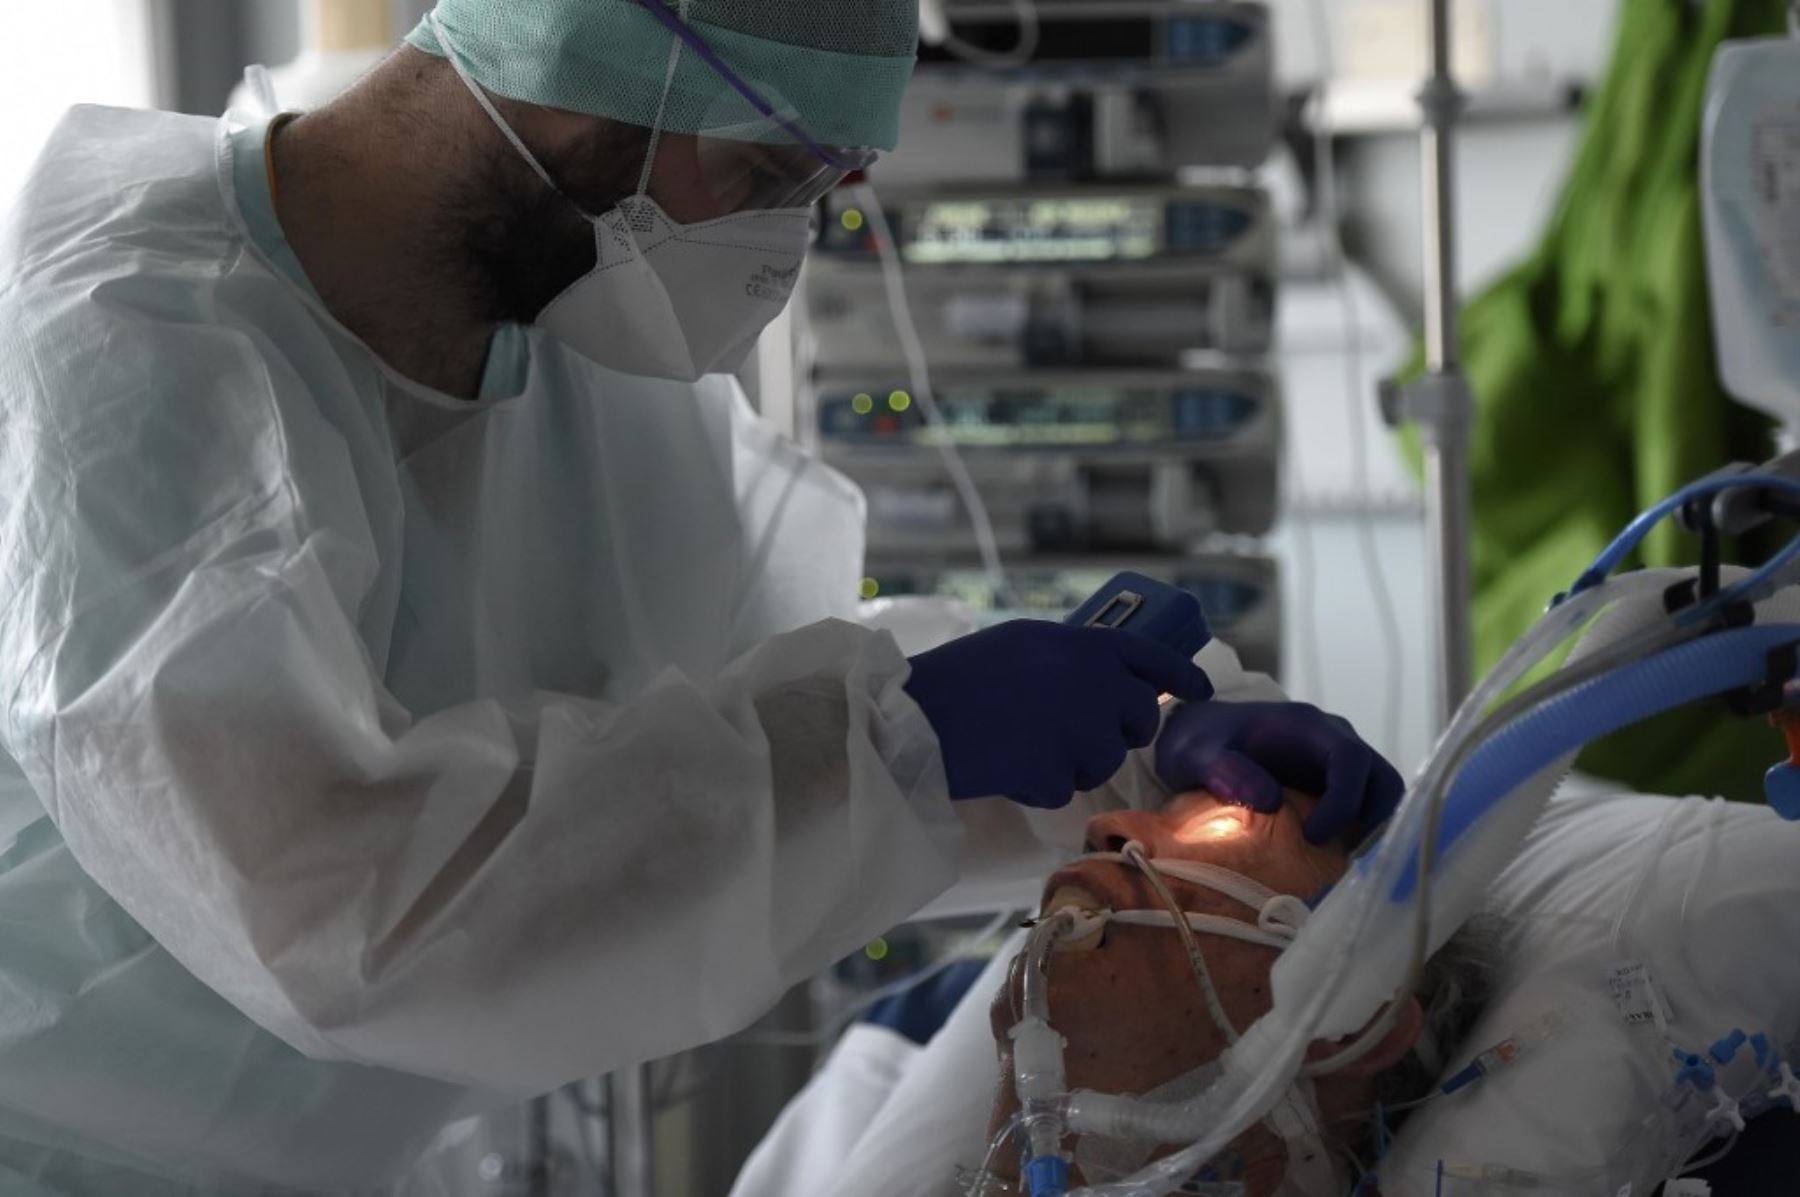 El personal médico atiende a un paciente en una unidad de cuidados intensivos de nivel para pacientes infectados con Covid-19 (nuevo coronavirus) en el Hospital Universitario de Estrasburgo (HUS) en Estrasburgo, este de Francia. Foto: AFP